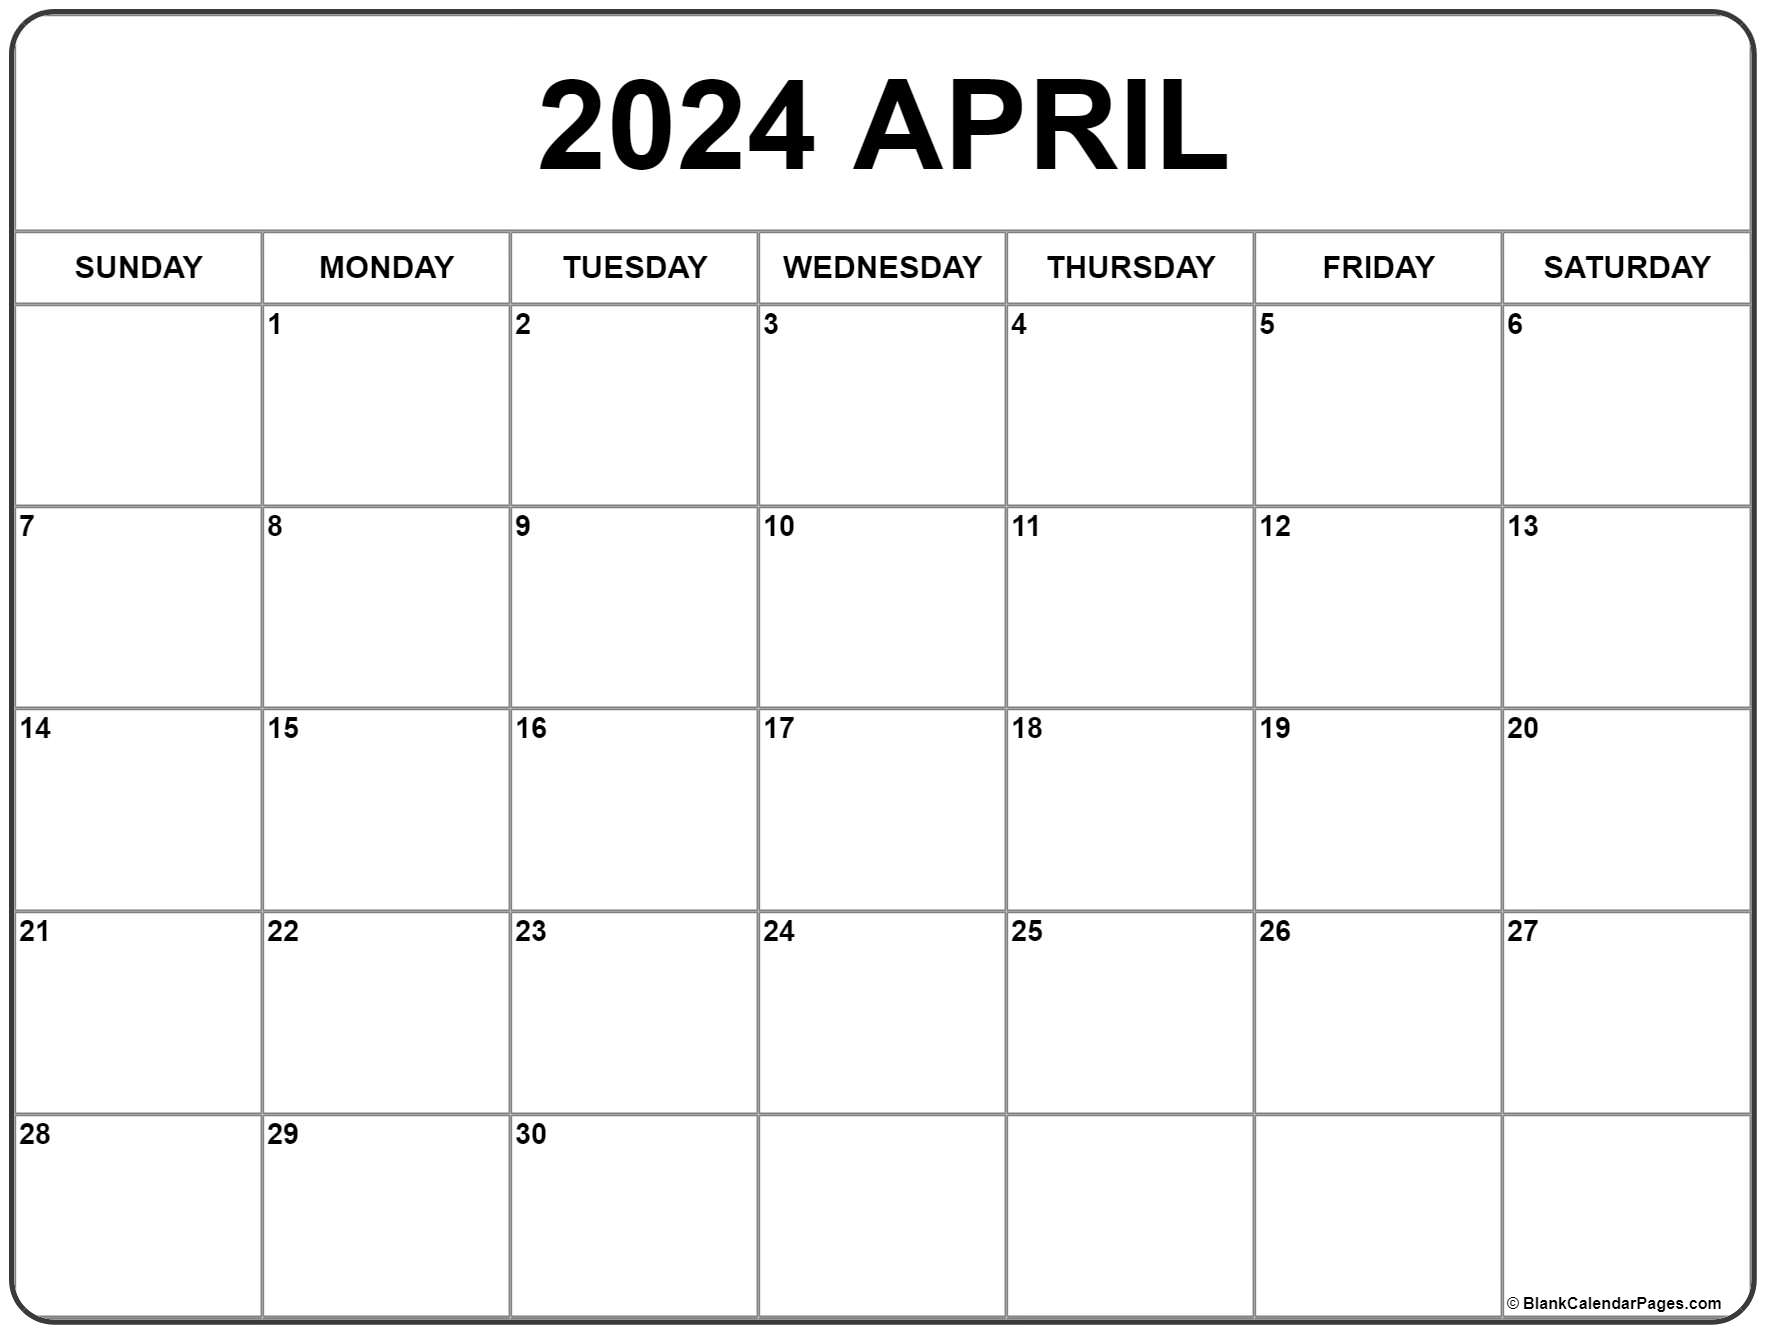 April 2024 Calendar | Free Printable Calendar inside Free April 2024 Calendar